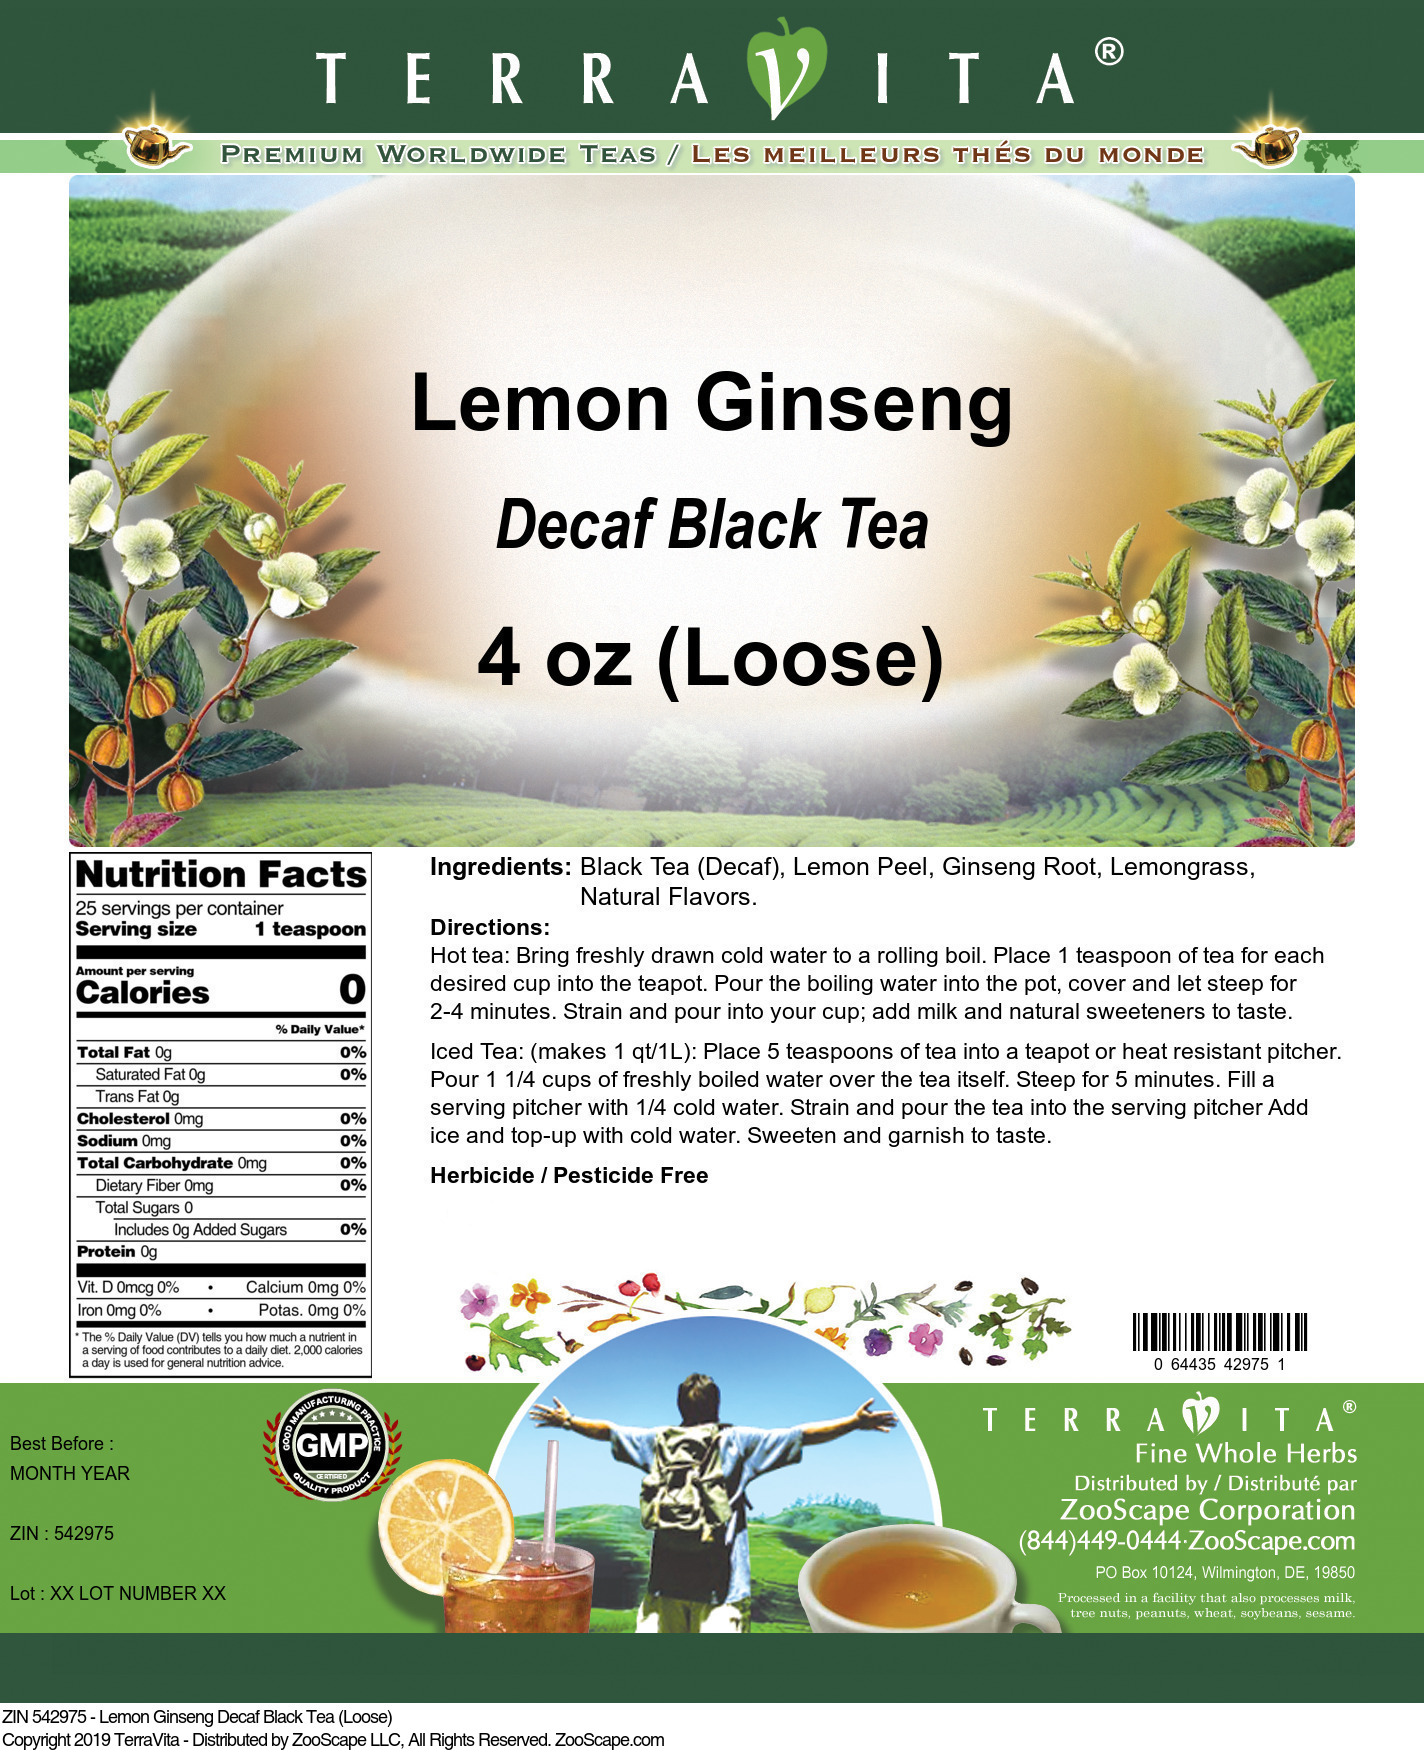 Lemon Ginseng Decaf Black Tea (Loose) - Label